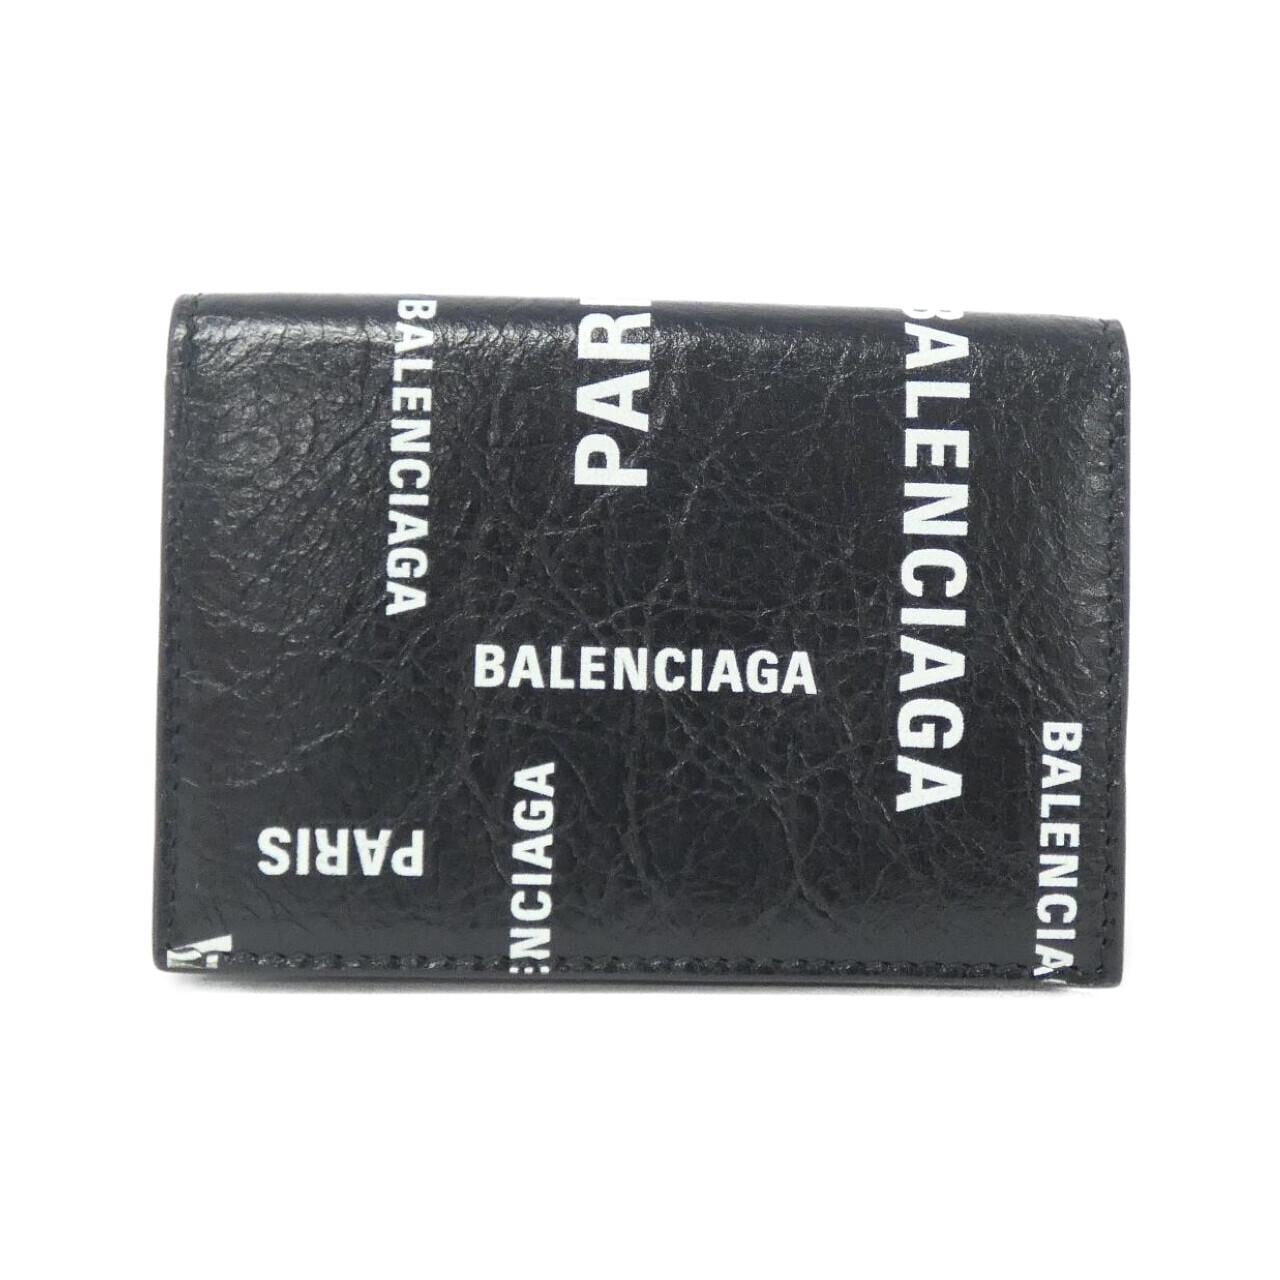 [BRAND NEW] BALENCIAGA Cash Mini Wallet 594312 2AAOC Wallet